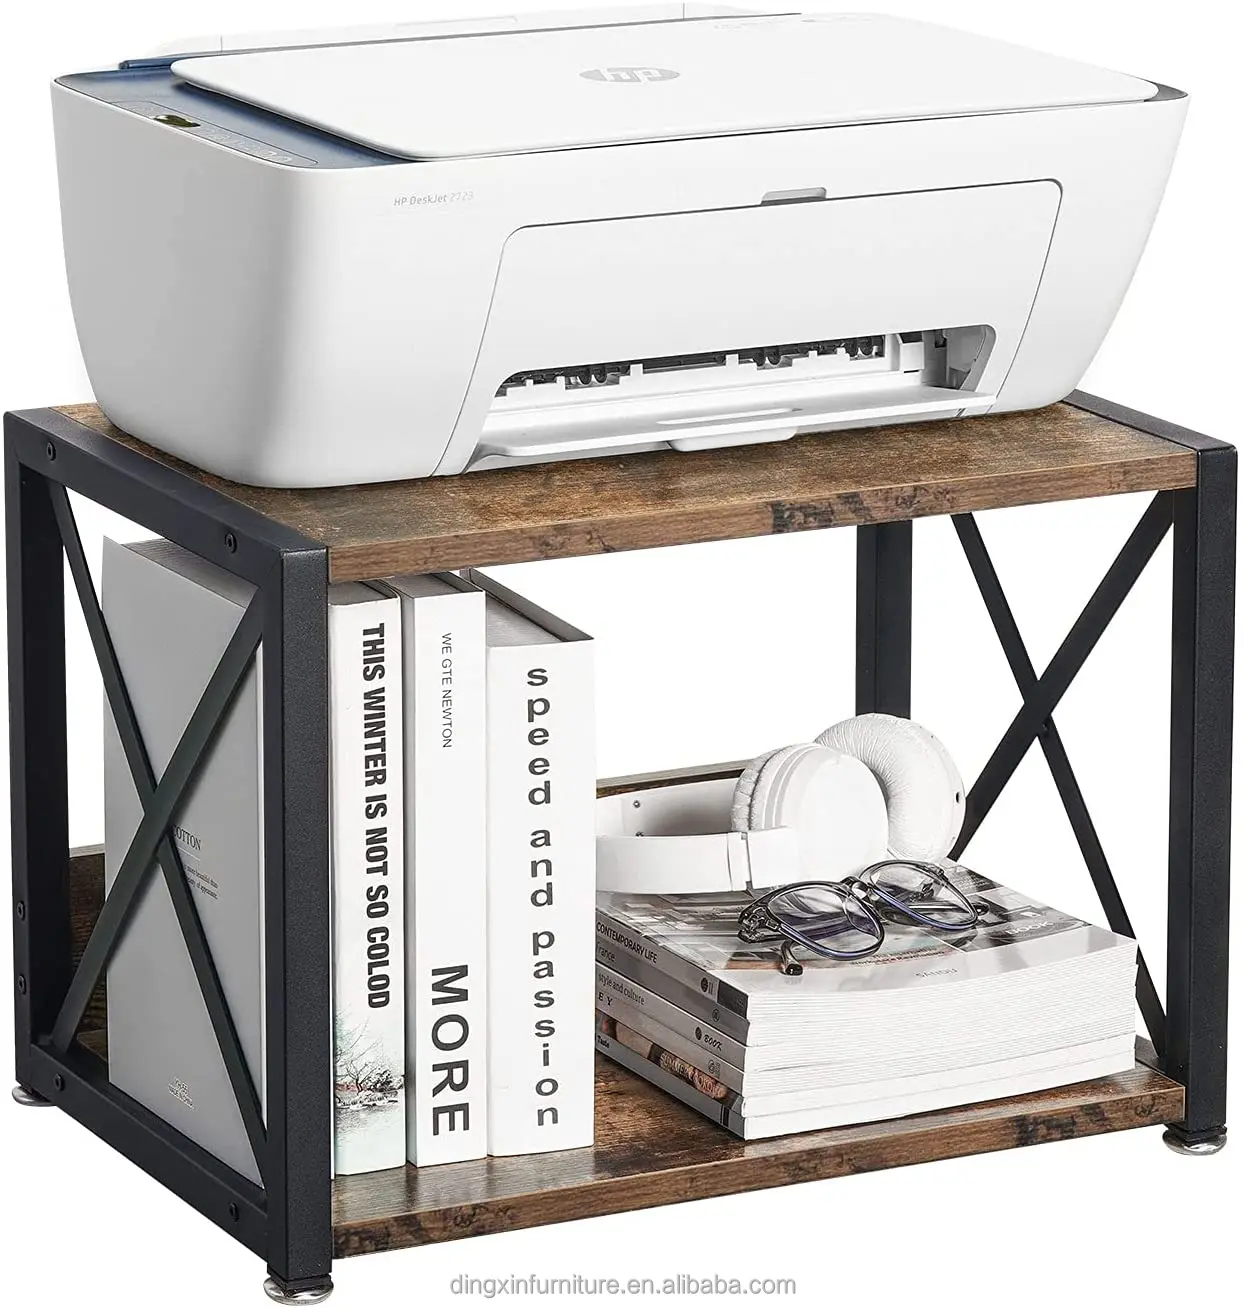 escáner Soporte de impresora madera para dispositivos fax fotocopiadora soporte impresora estantería organizador escritorio 2 niveles oficina y hogar con almohadillas antideslizantes libros 